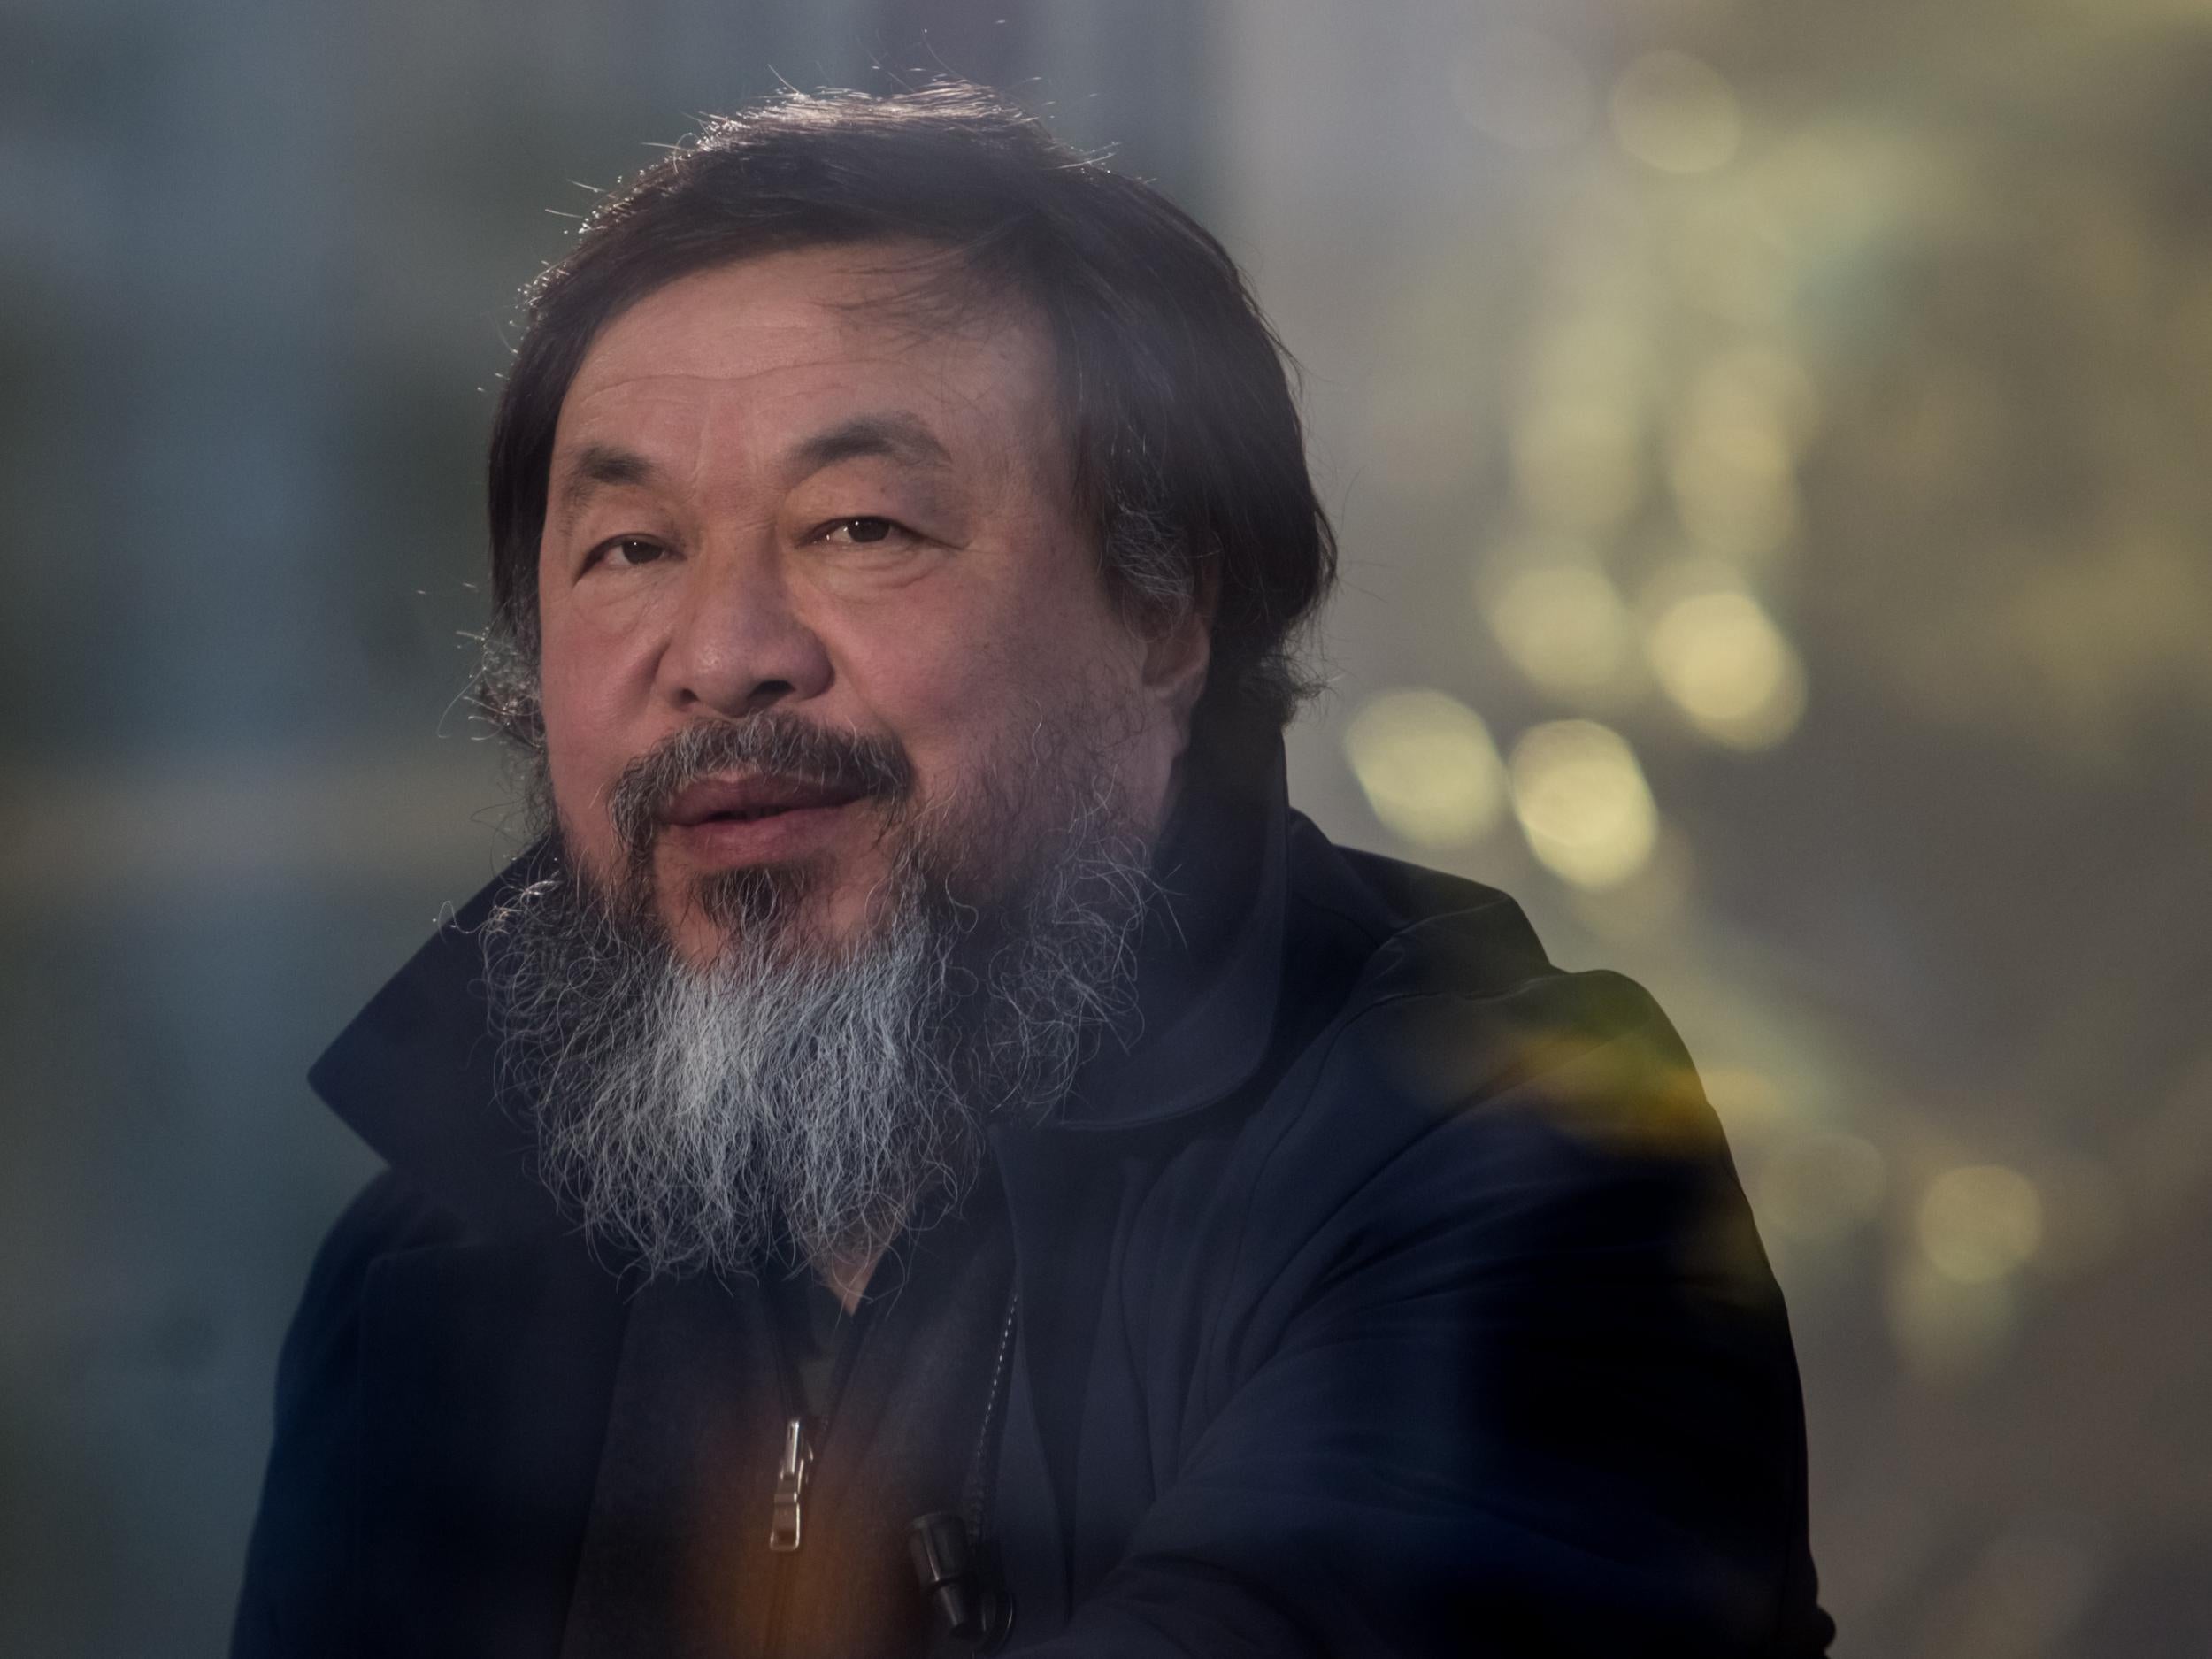 Chinese artist Ai Weiwei